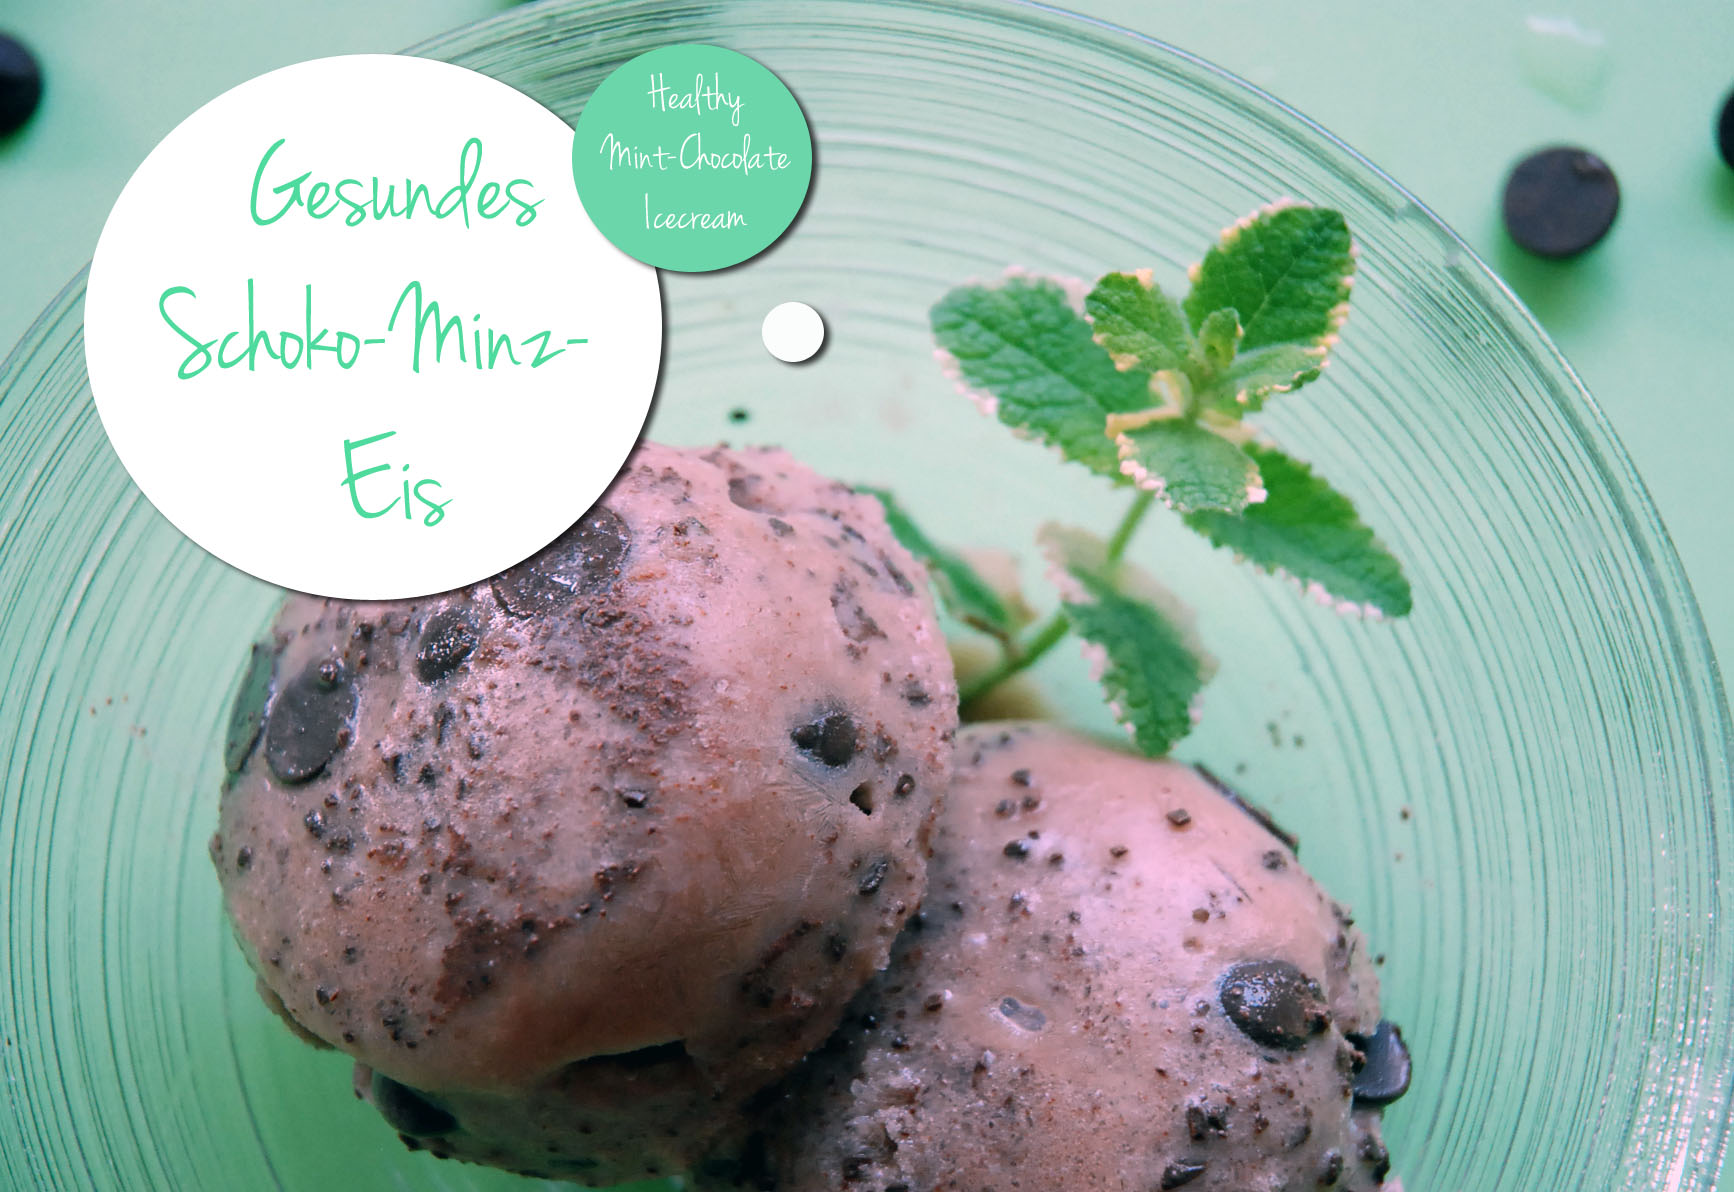 Gesundes Schoko-Minz-Eis / Healthy chocolate mint icecream